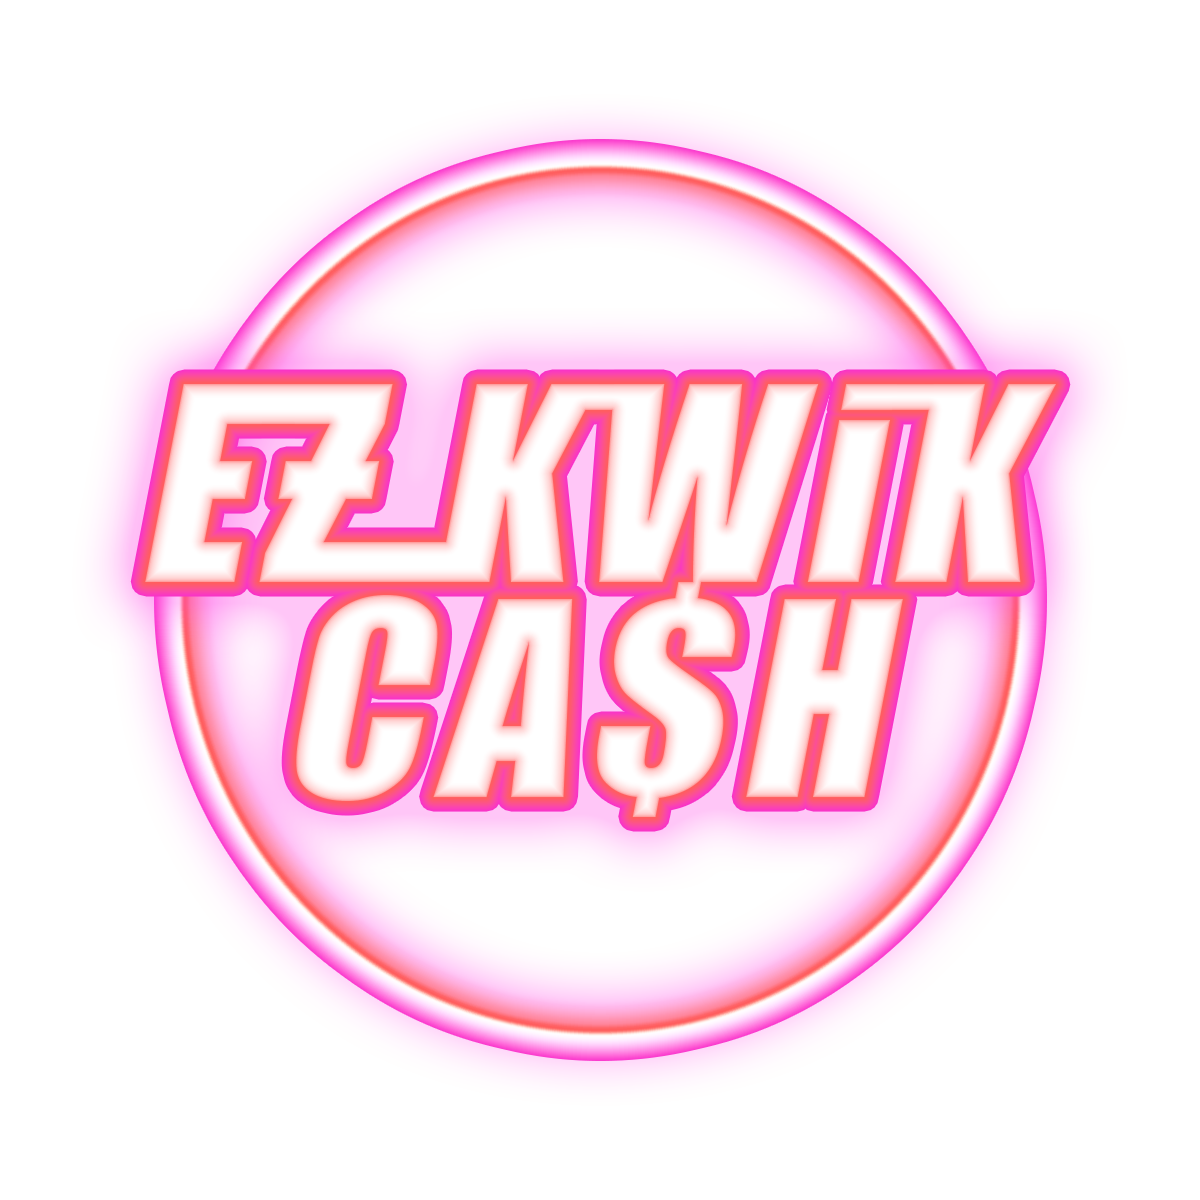 ezkwikcash-logo.png